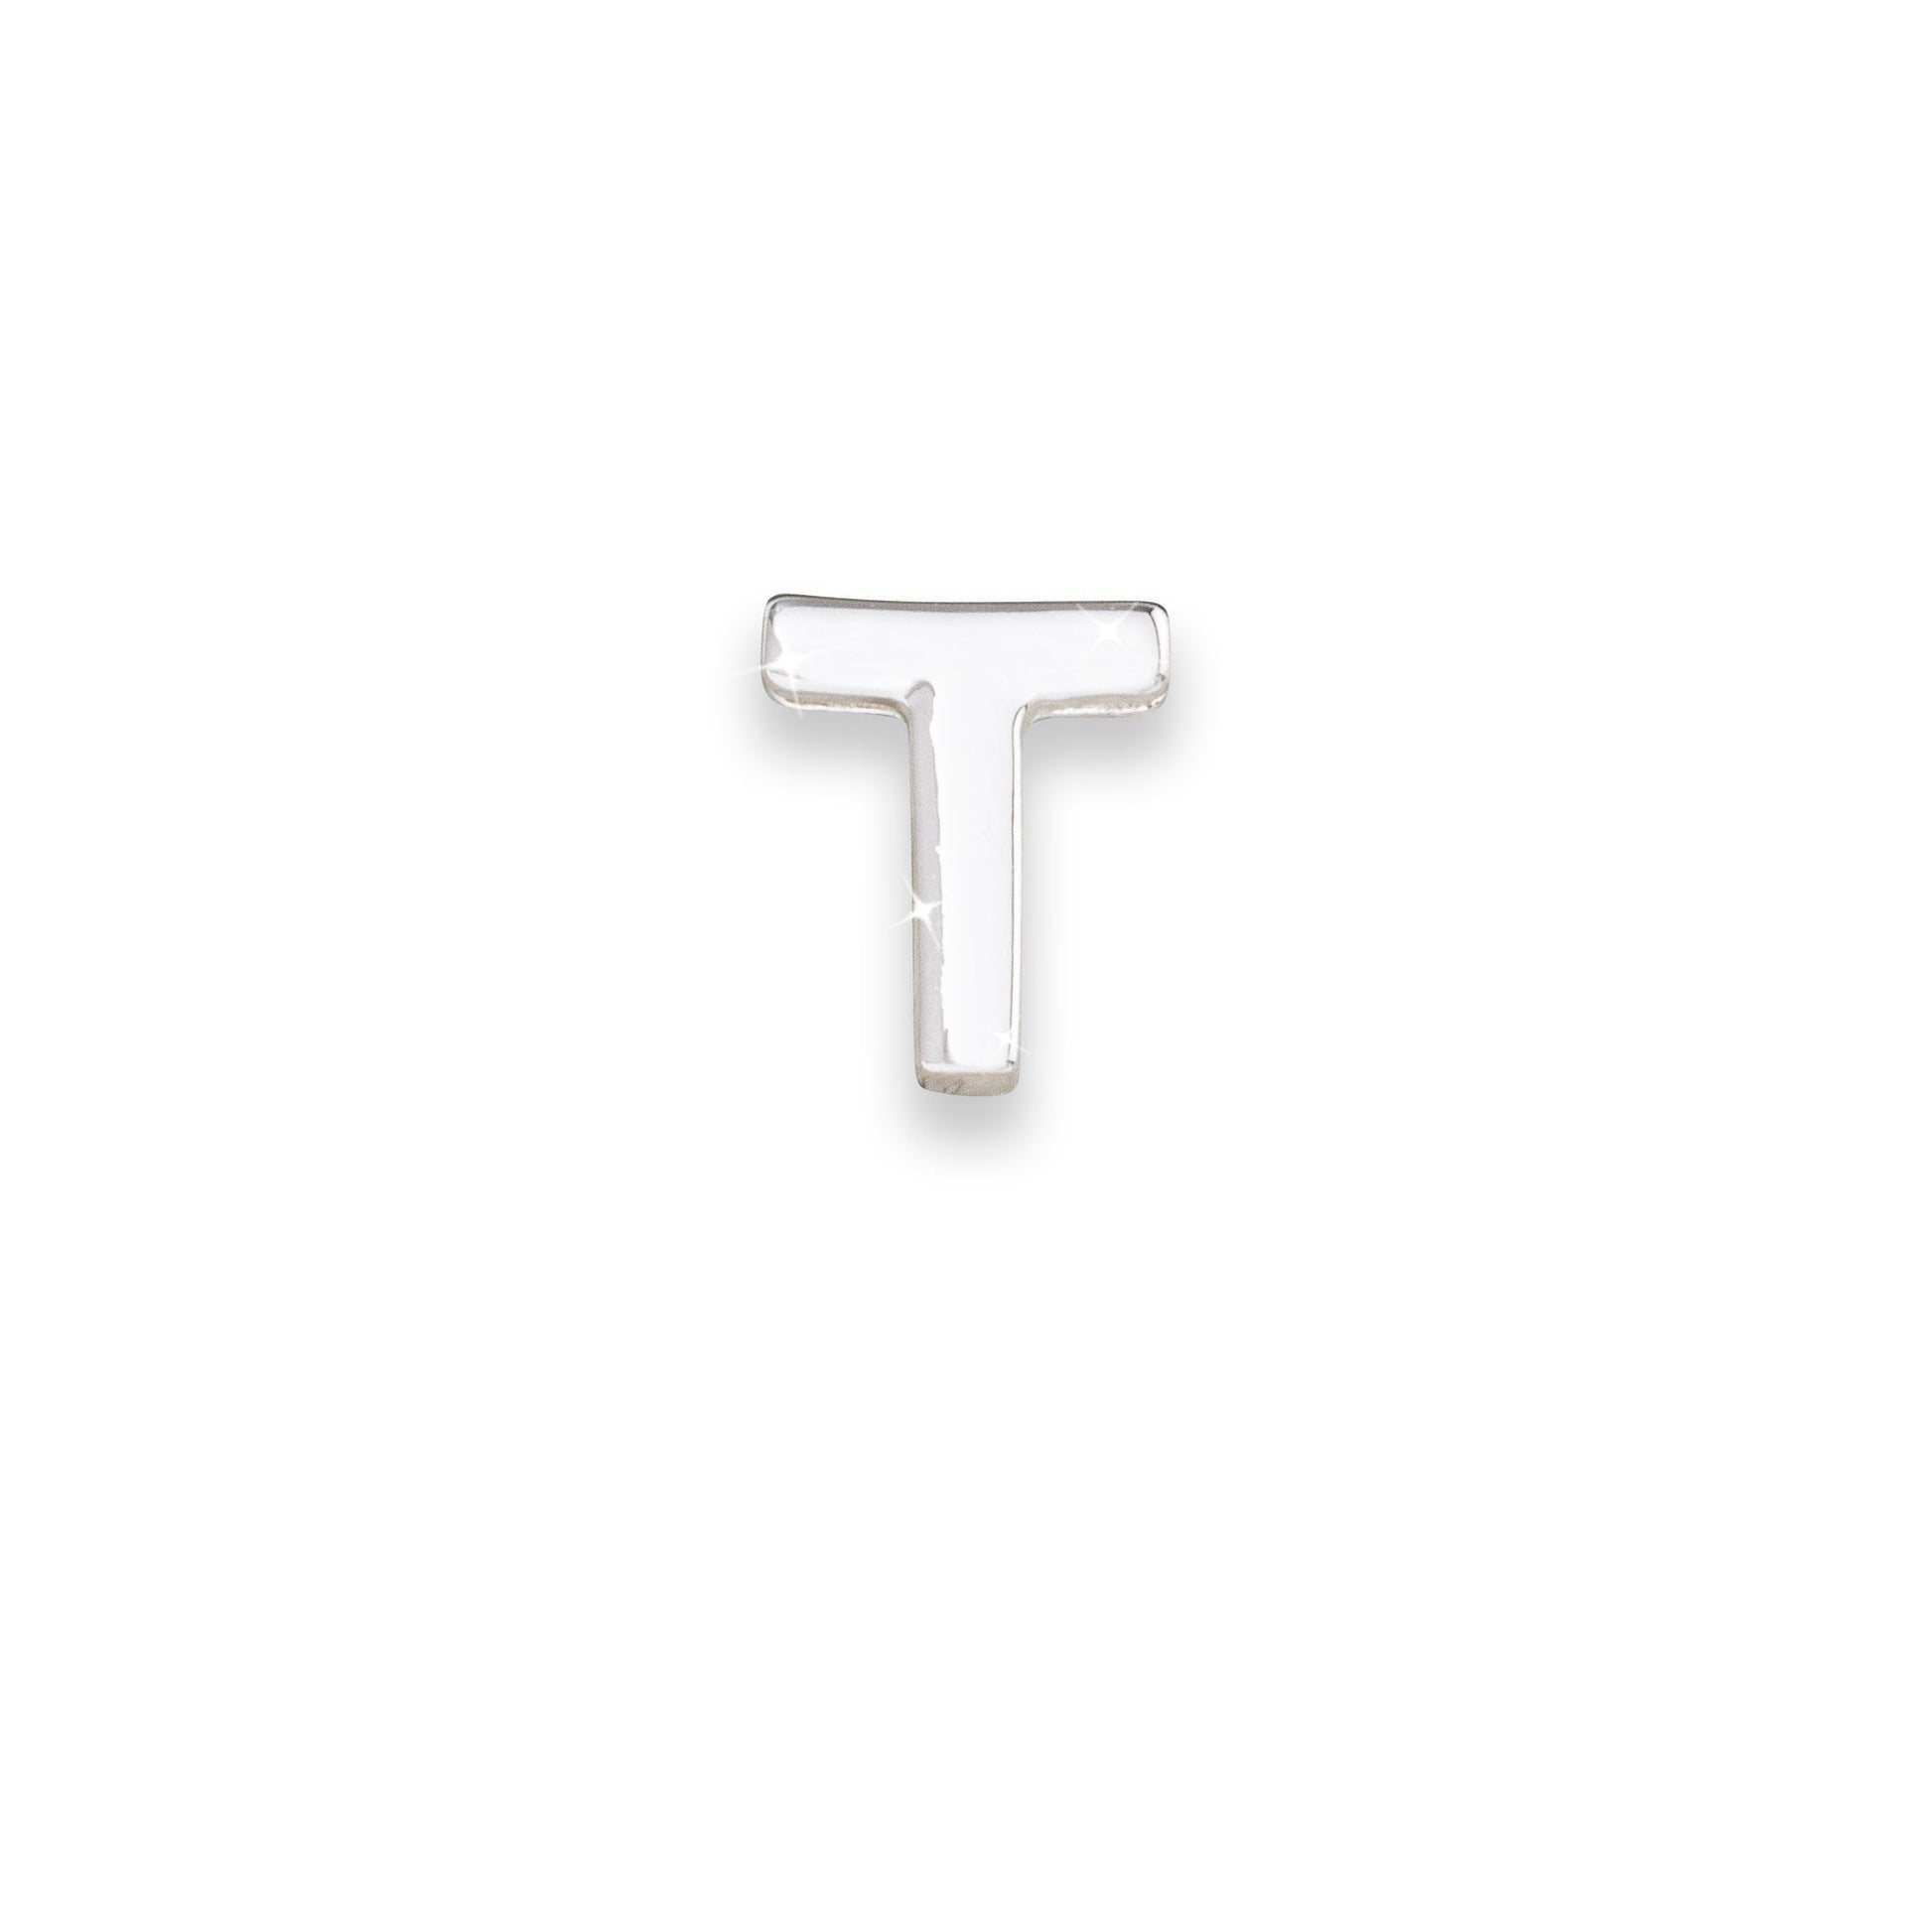 Silver letter T monogram charm for necklaces & bracelets